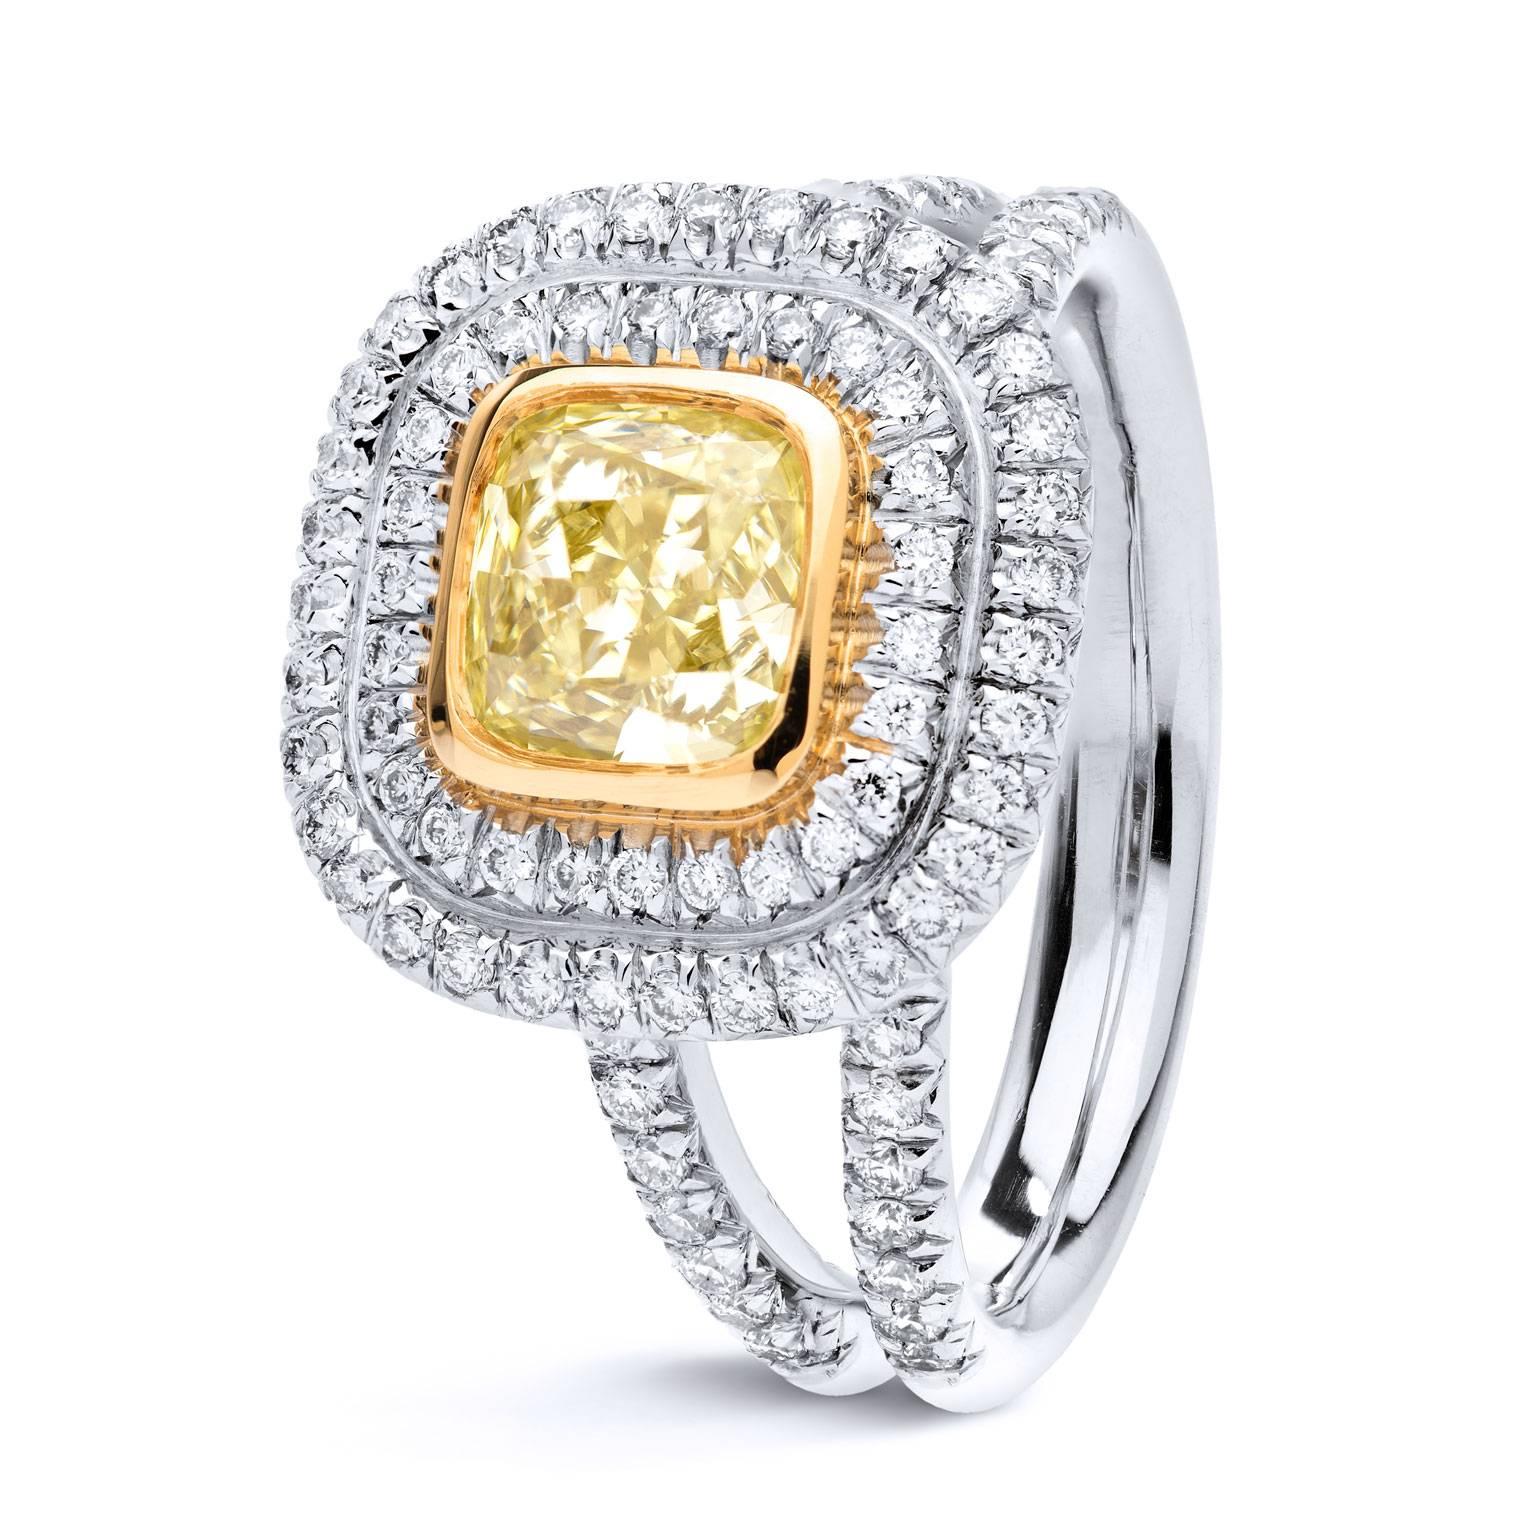  GIA Cert 1,03 Karat Fancy Yellow Cushion Cut Diamant und Pave Diamant Gold Ring

In Anlehnung an ein ausverkauftes Stadion umkreisen zwei Halos aus Diamanten einen 1,03 Karat schweren gelben Diamanten im Kissenschliff (VS2), der in eine Lünette aus